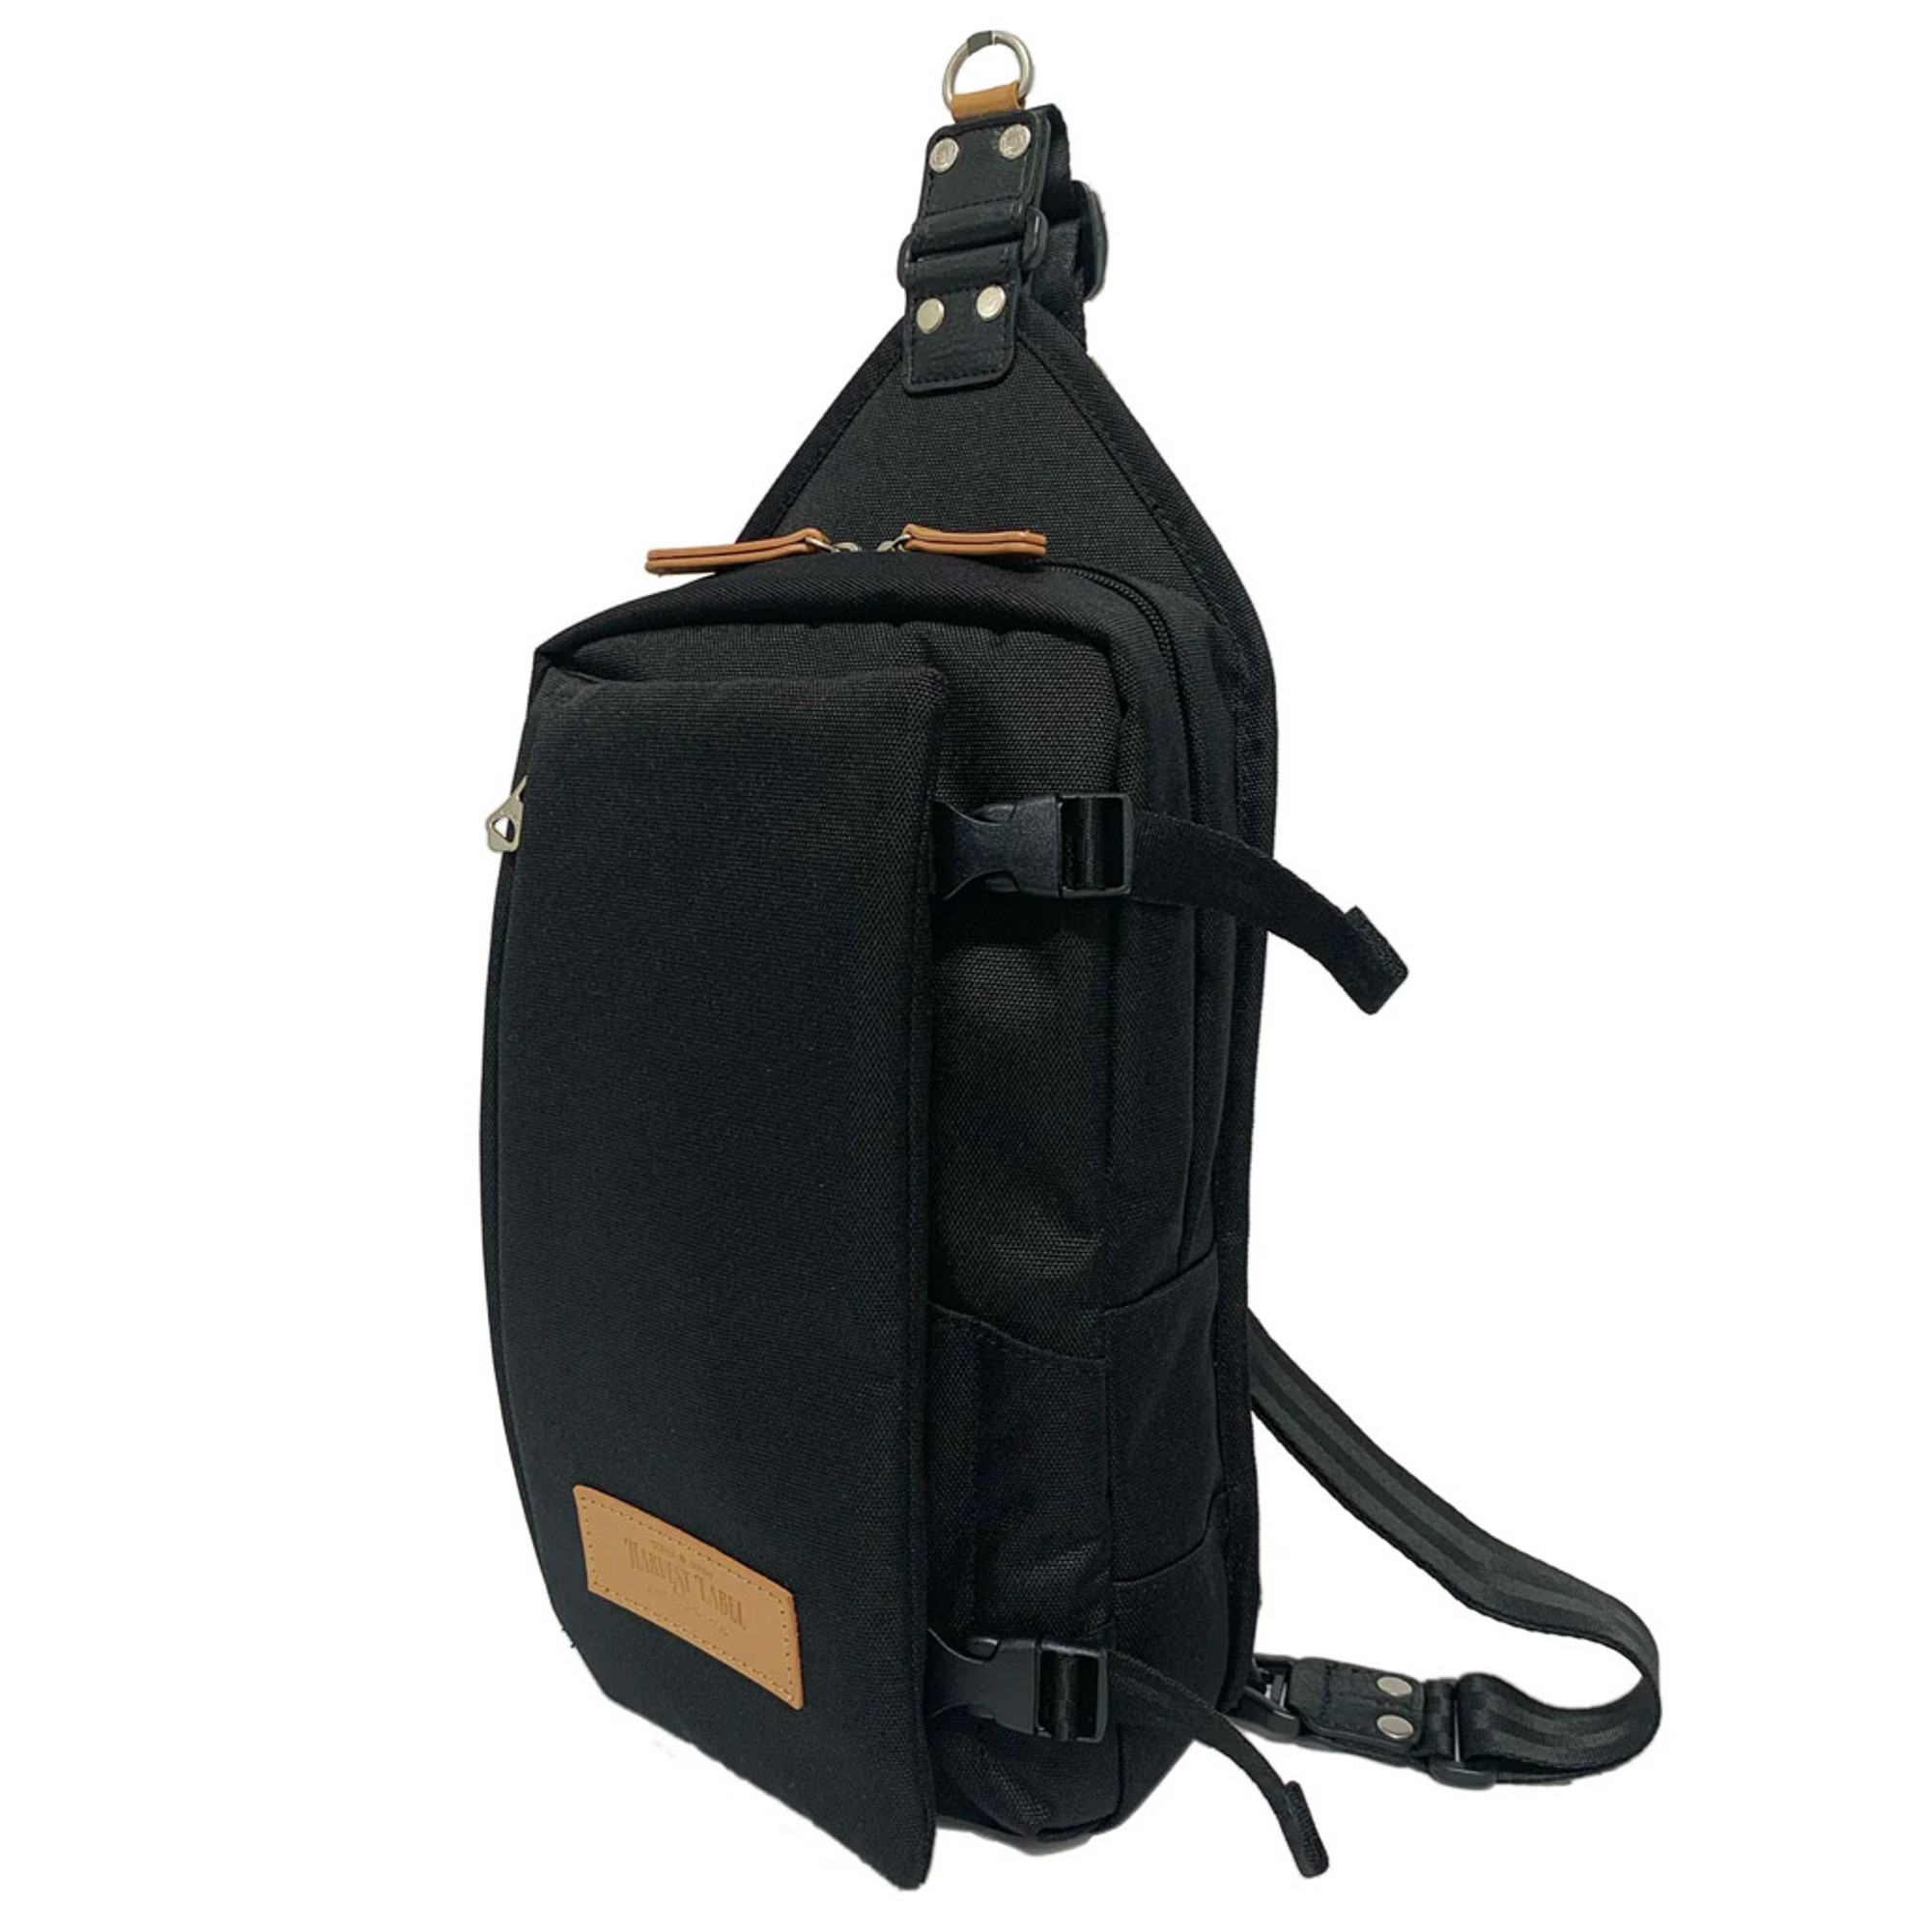 Harvest Keeper Black - Black Precut Bags 11 in x 18 in (50-Pack)